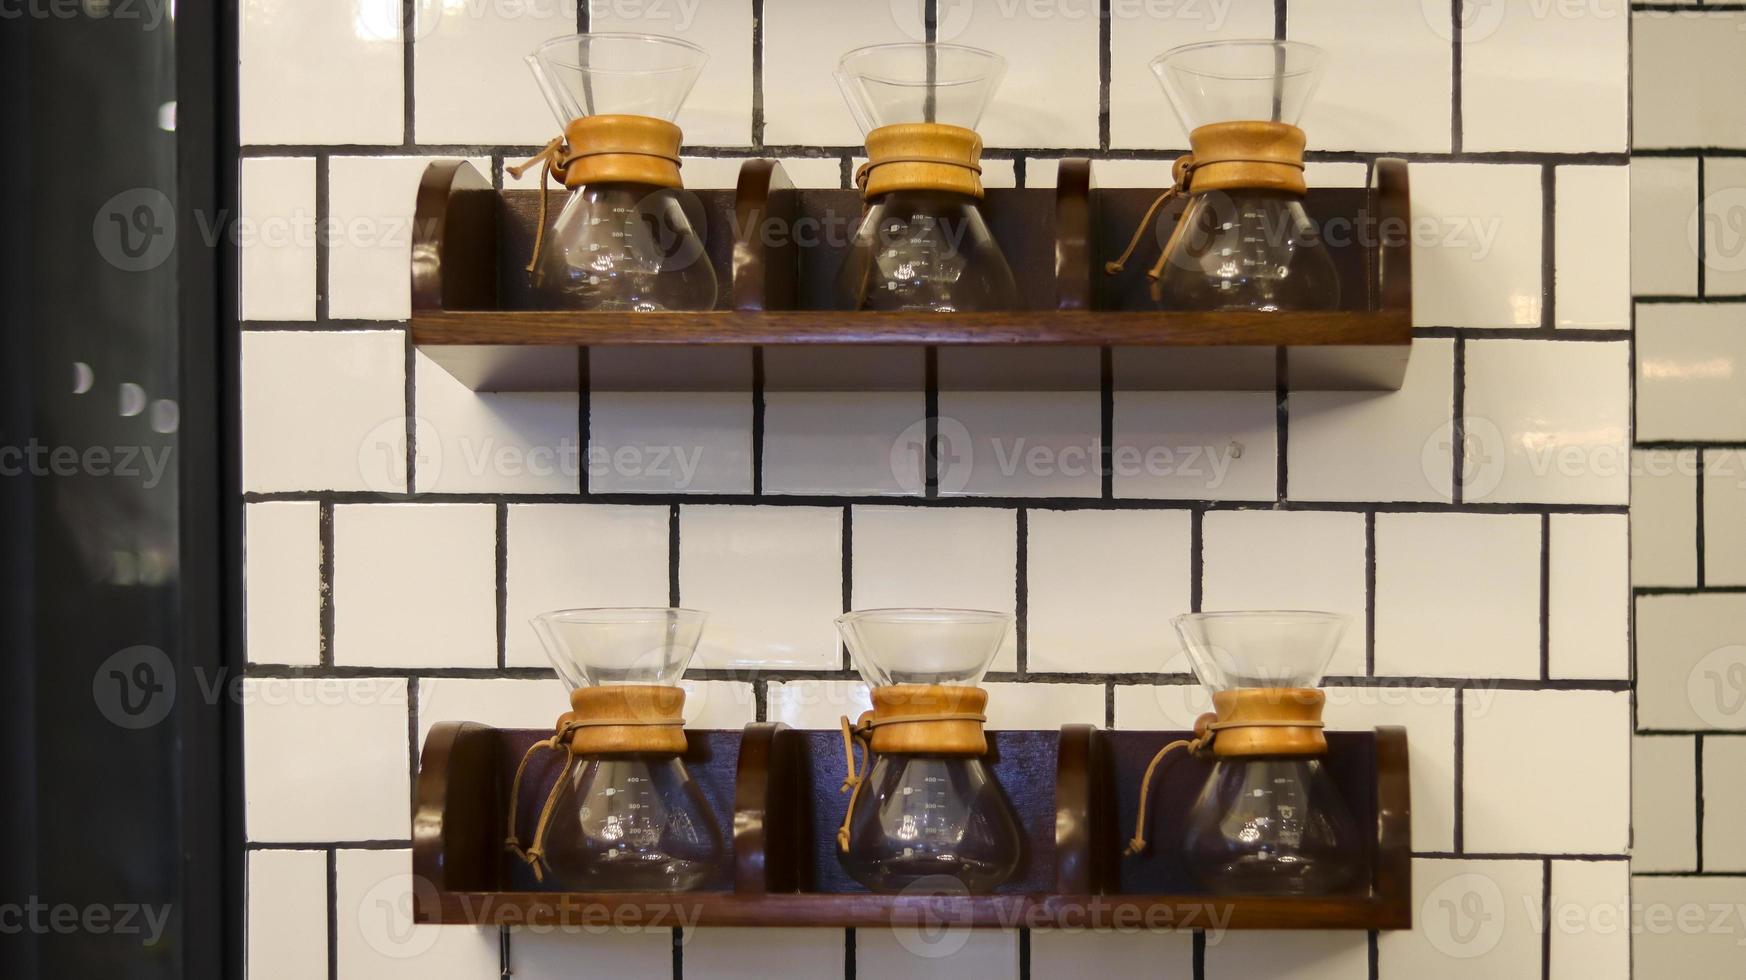 décoration d'étagère de cuisine pleine de vase en verre comme idée d'intérieur au café, à la cuisine à domicile ou au restaurant public. photo